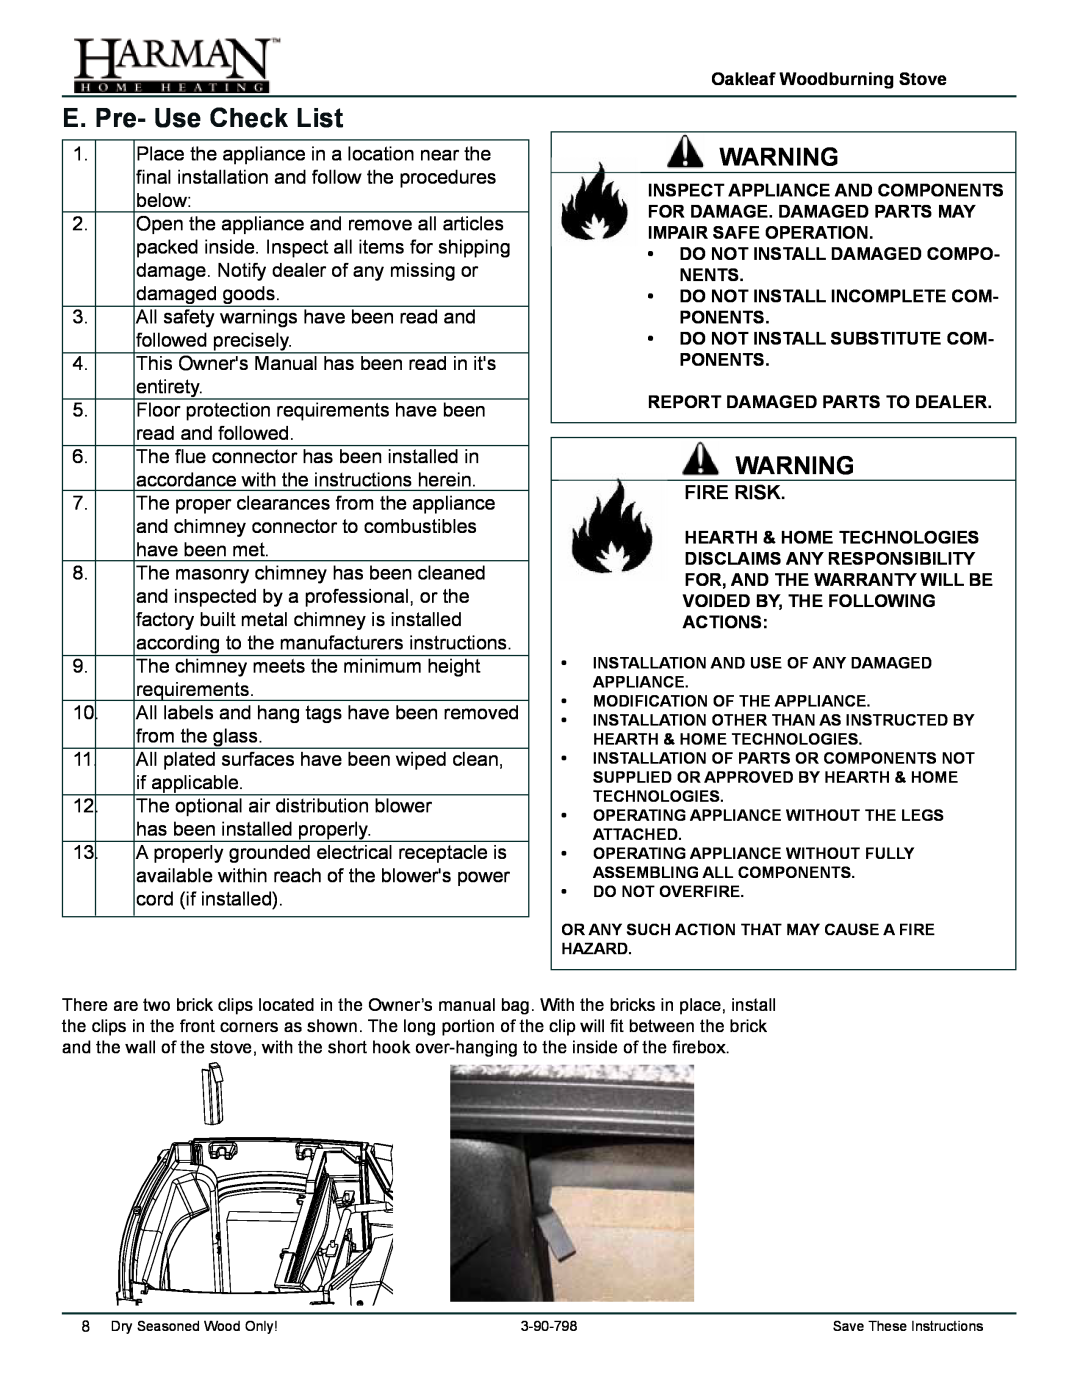 Harman Stove Company 1-90-797000 manual E. Pre- Use Check List, Fire Risk 